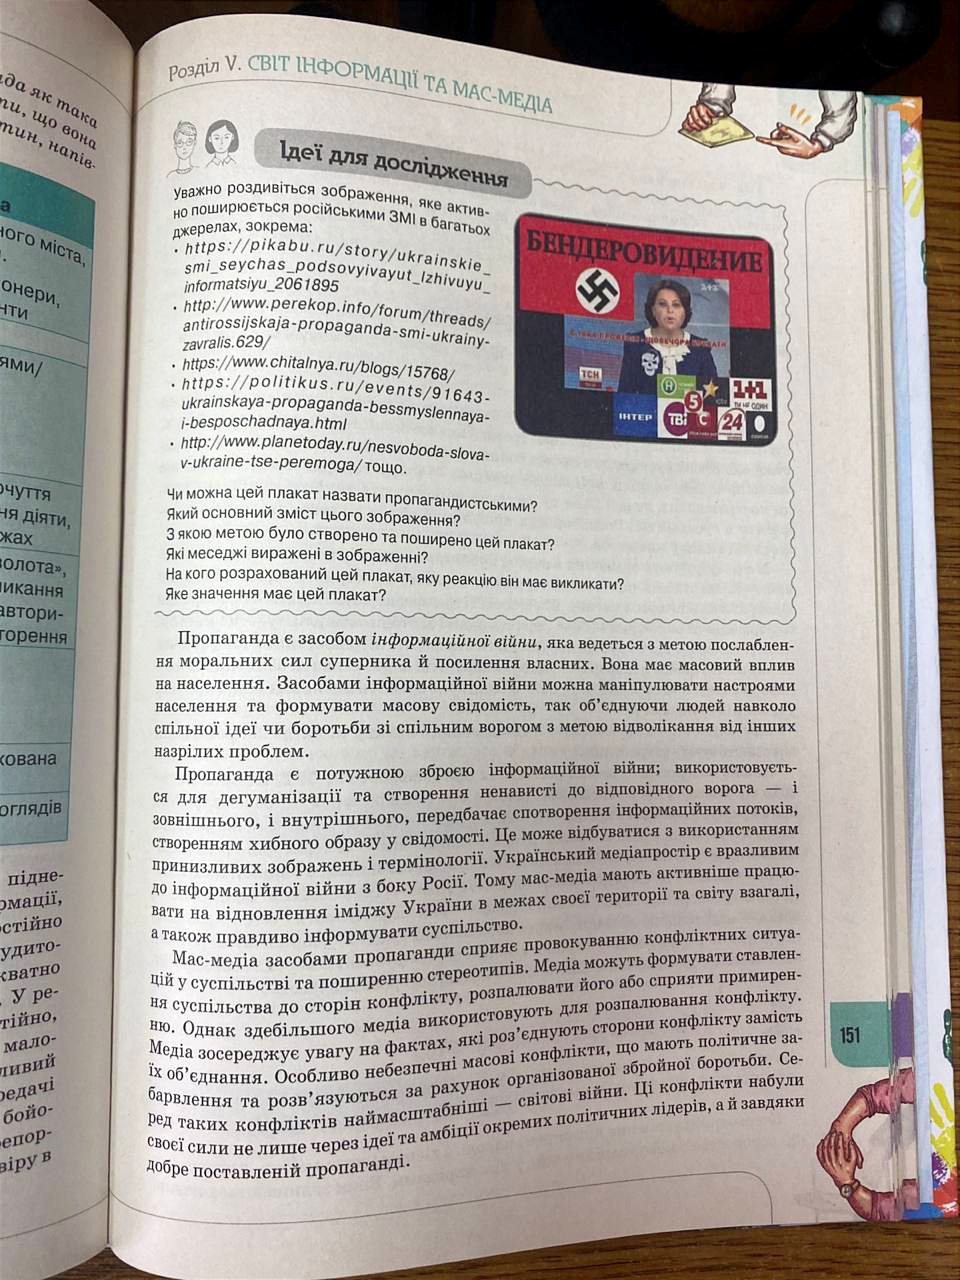 "Нацисткий учебник" в Украине. Разоблачение фейка